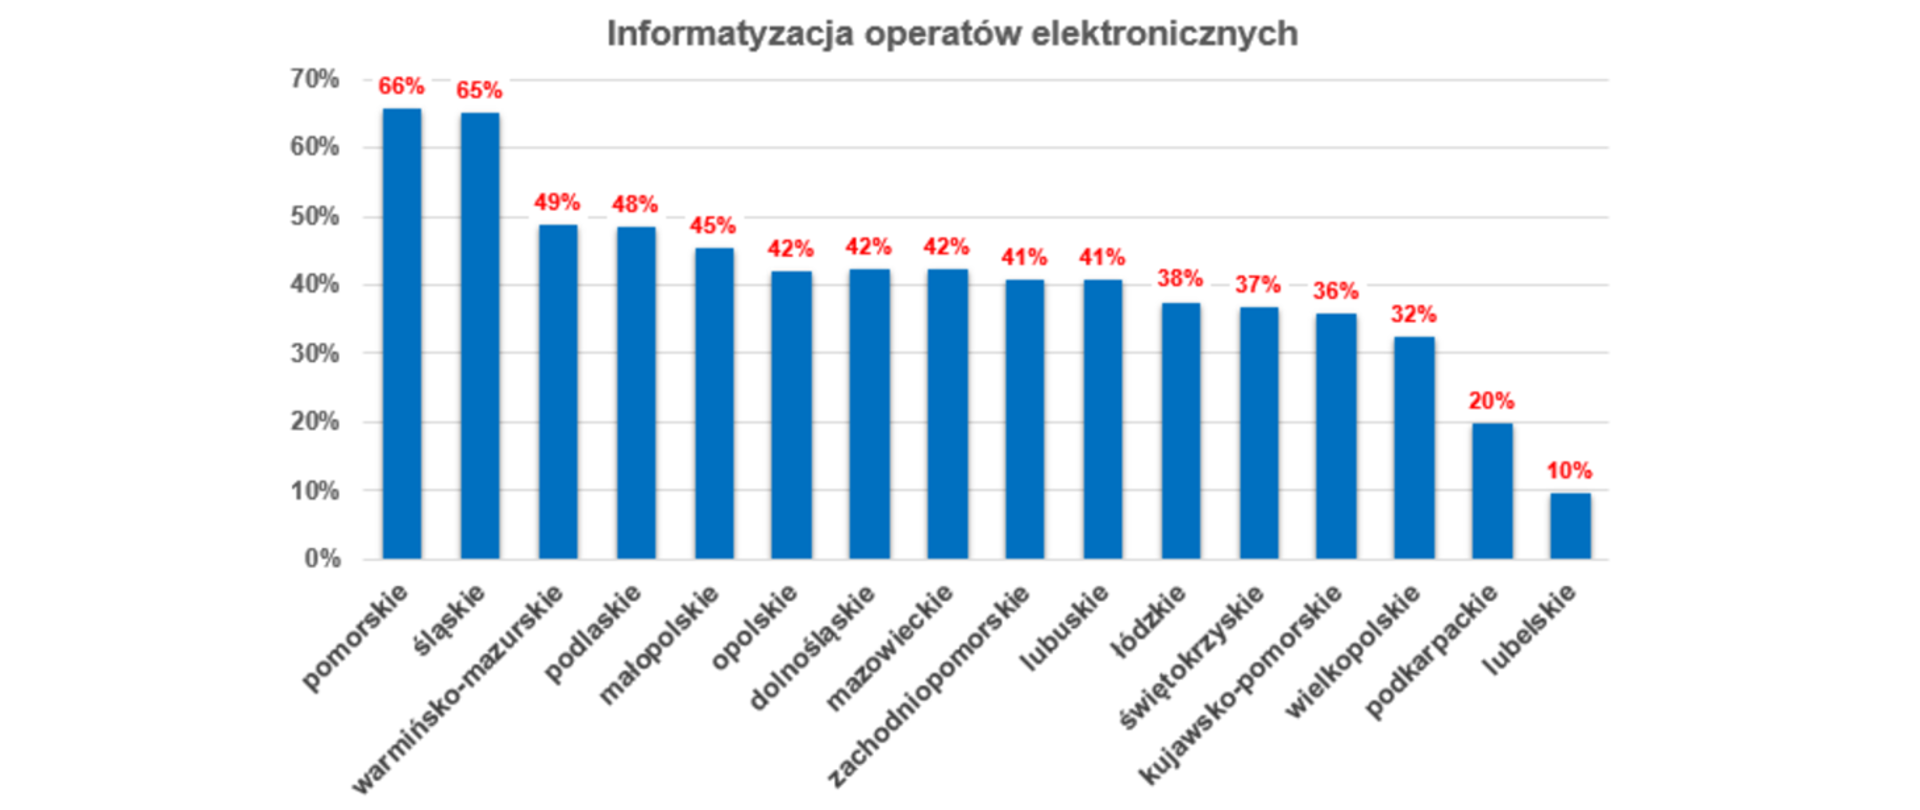 Wykres przedstawiający poziom informatyzacji operatów elektronicznych w poszczególnych województwach:
pomorskie 66%; śląskie 65%; warmińsko-mazurskie 49%; podlaskie 48%; małopolskie 45%; opolskie 42%; dolnośląskie 42%; mazowieckie 42%; zachodniopomorskie 41%; lubuskie 41%; łódzkie 38%; świętokrzyskie 37%; kujawsko-pomorskie 36%; wielkopolskie 32%; podkarpackie 20%; lubelskie 10%; 